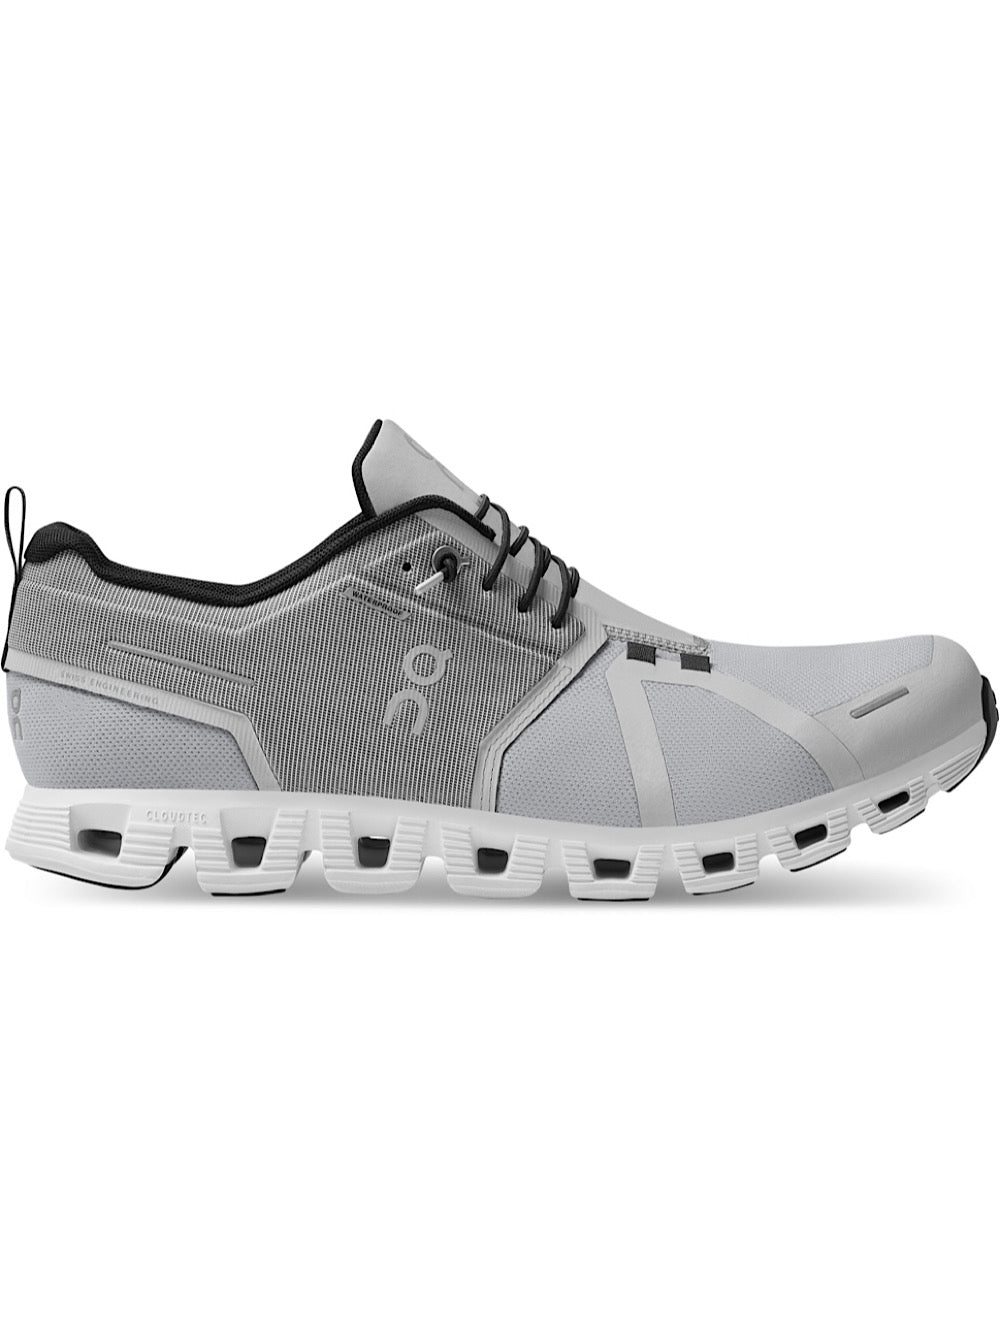 ON Sneakers Running mod. Cloud 5 Waterproof ghiaccio/bianco